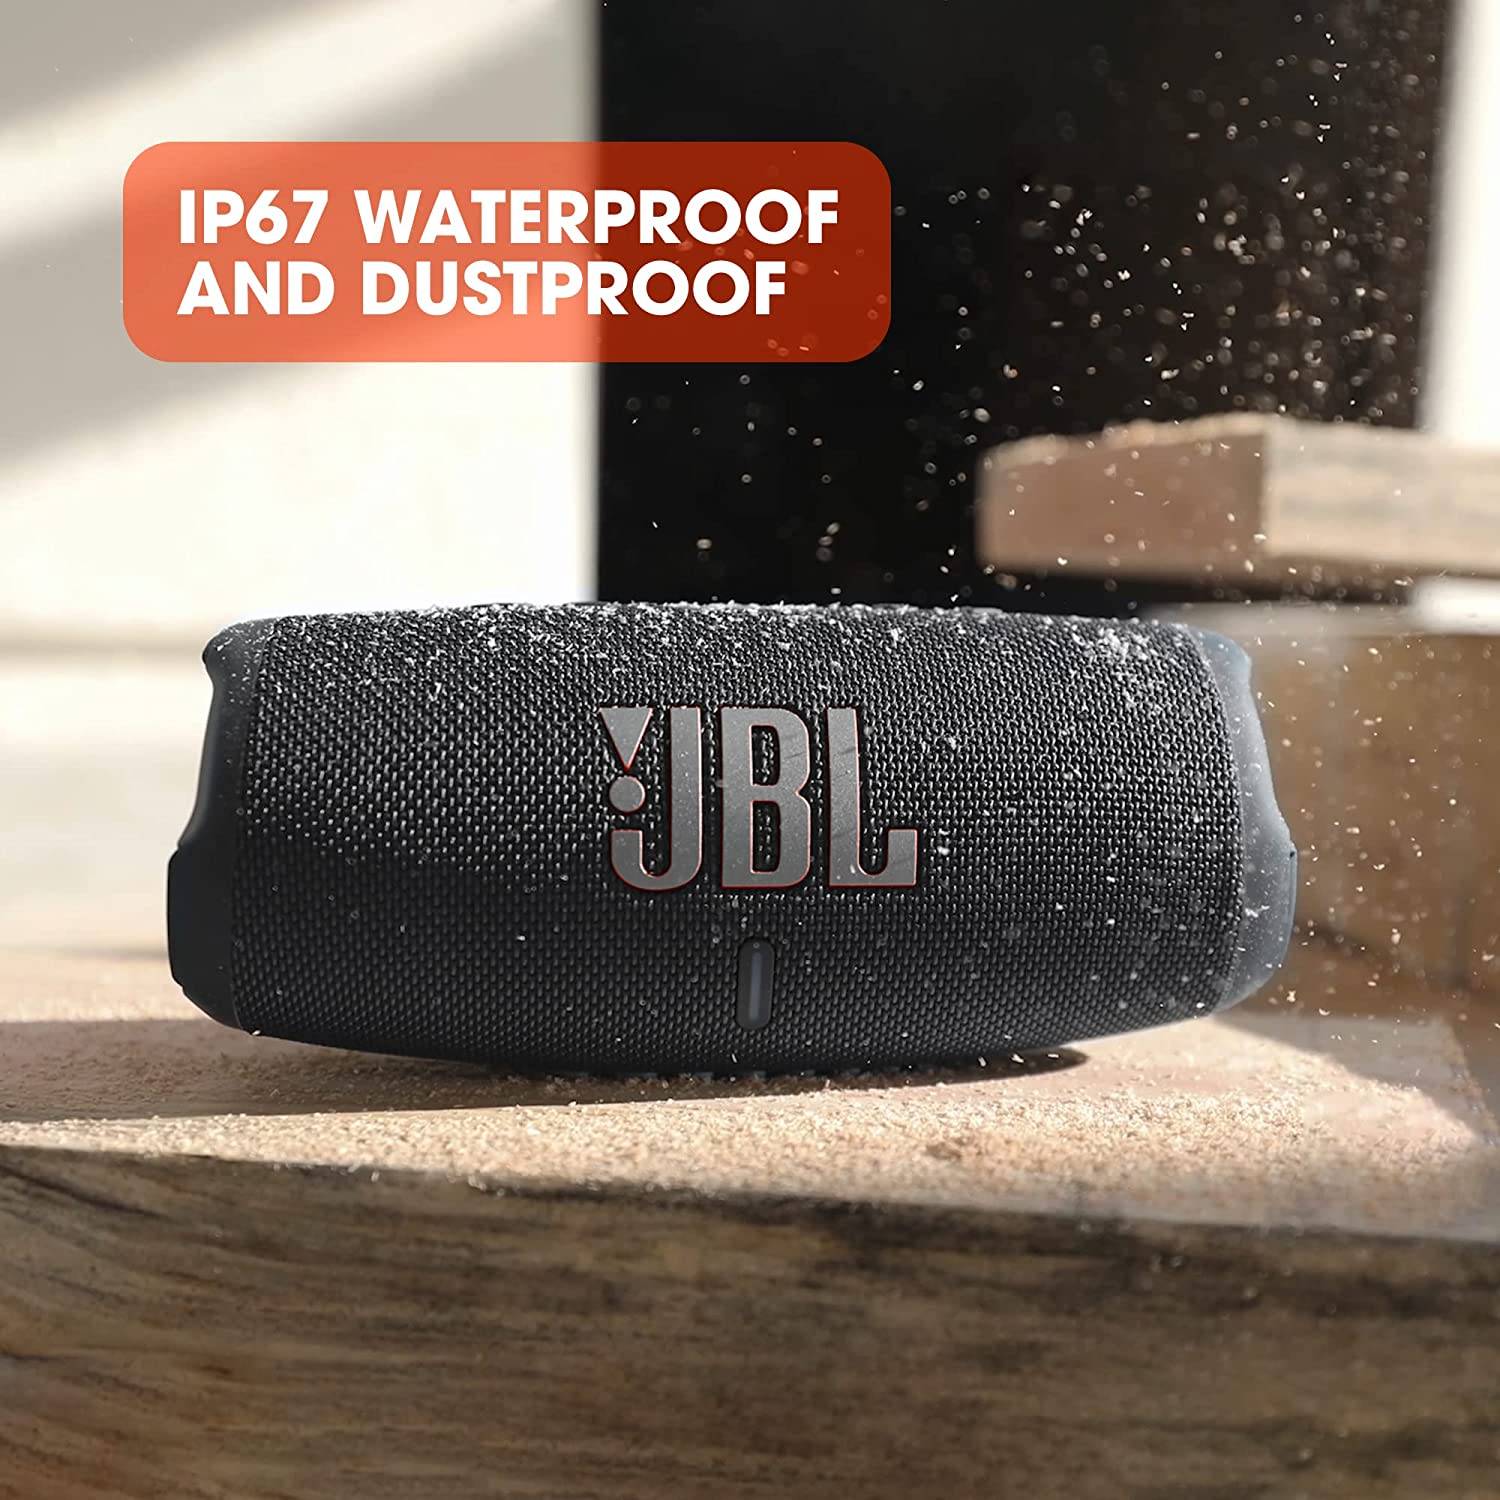 IP67 Waterproof and Dustproof